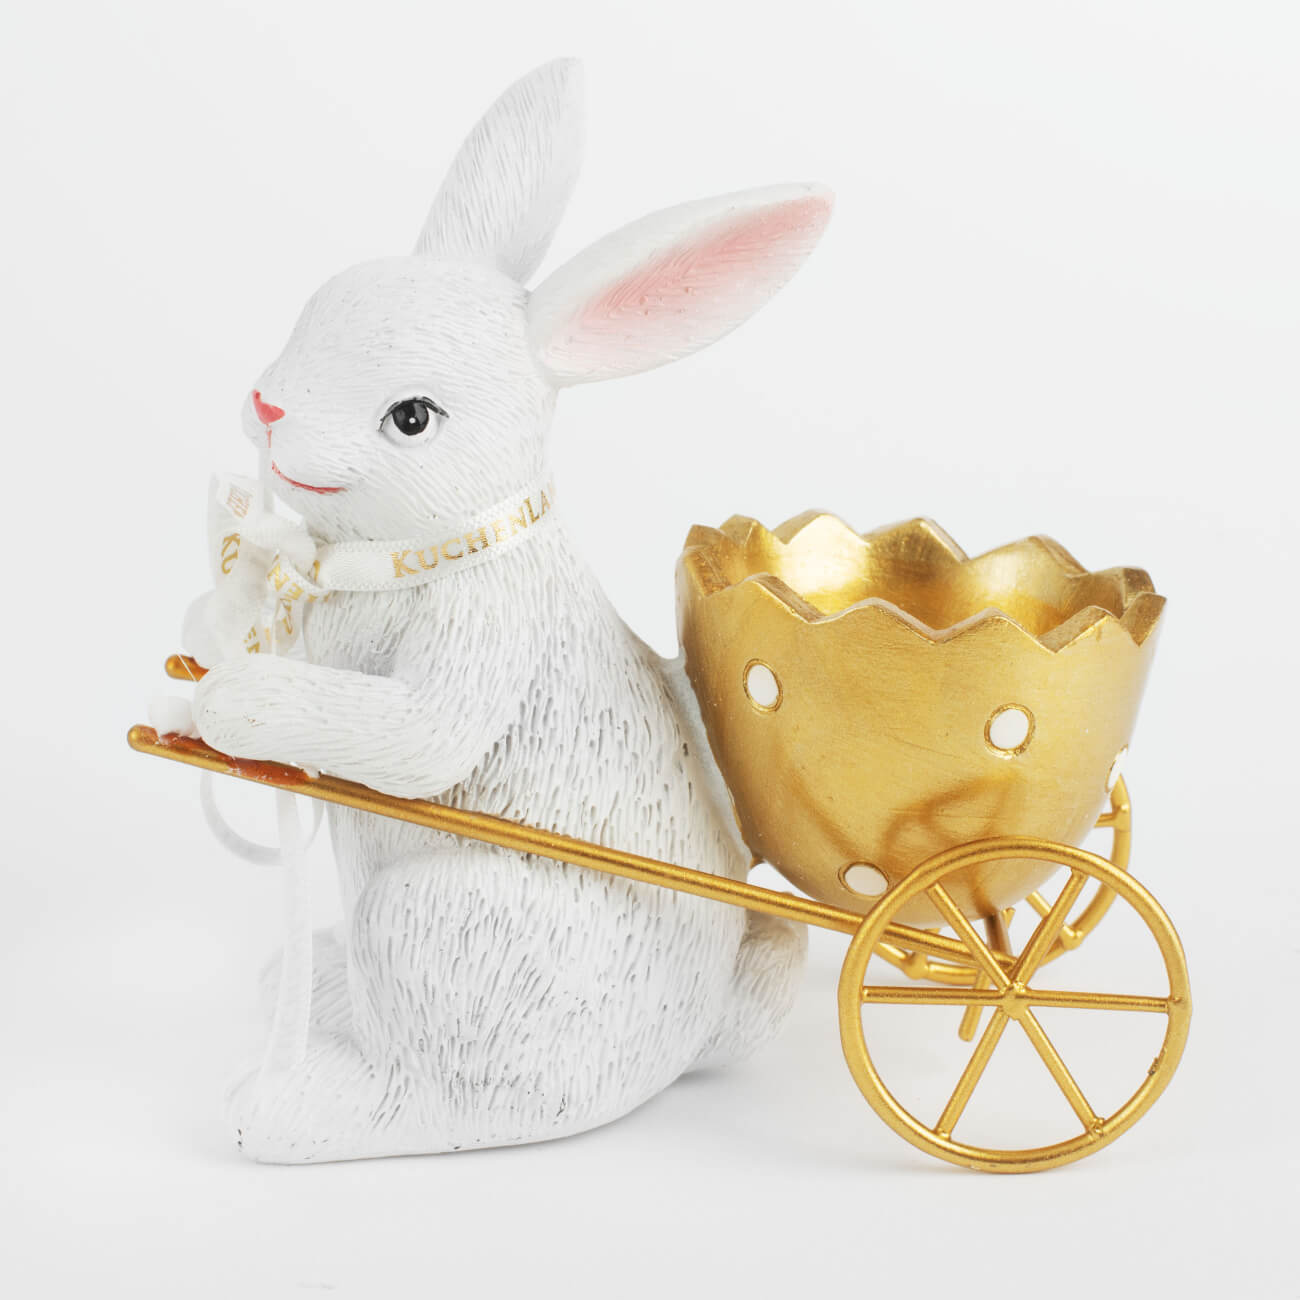 Подставка для яйца, 12 см, полирезин, бело-золотистая, Кролик с тележкой, Easter gold подставка под телефон денежный кролик гжель с золотом